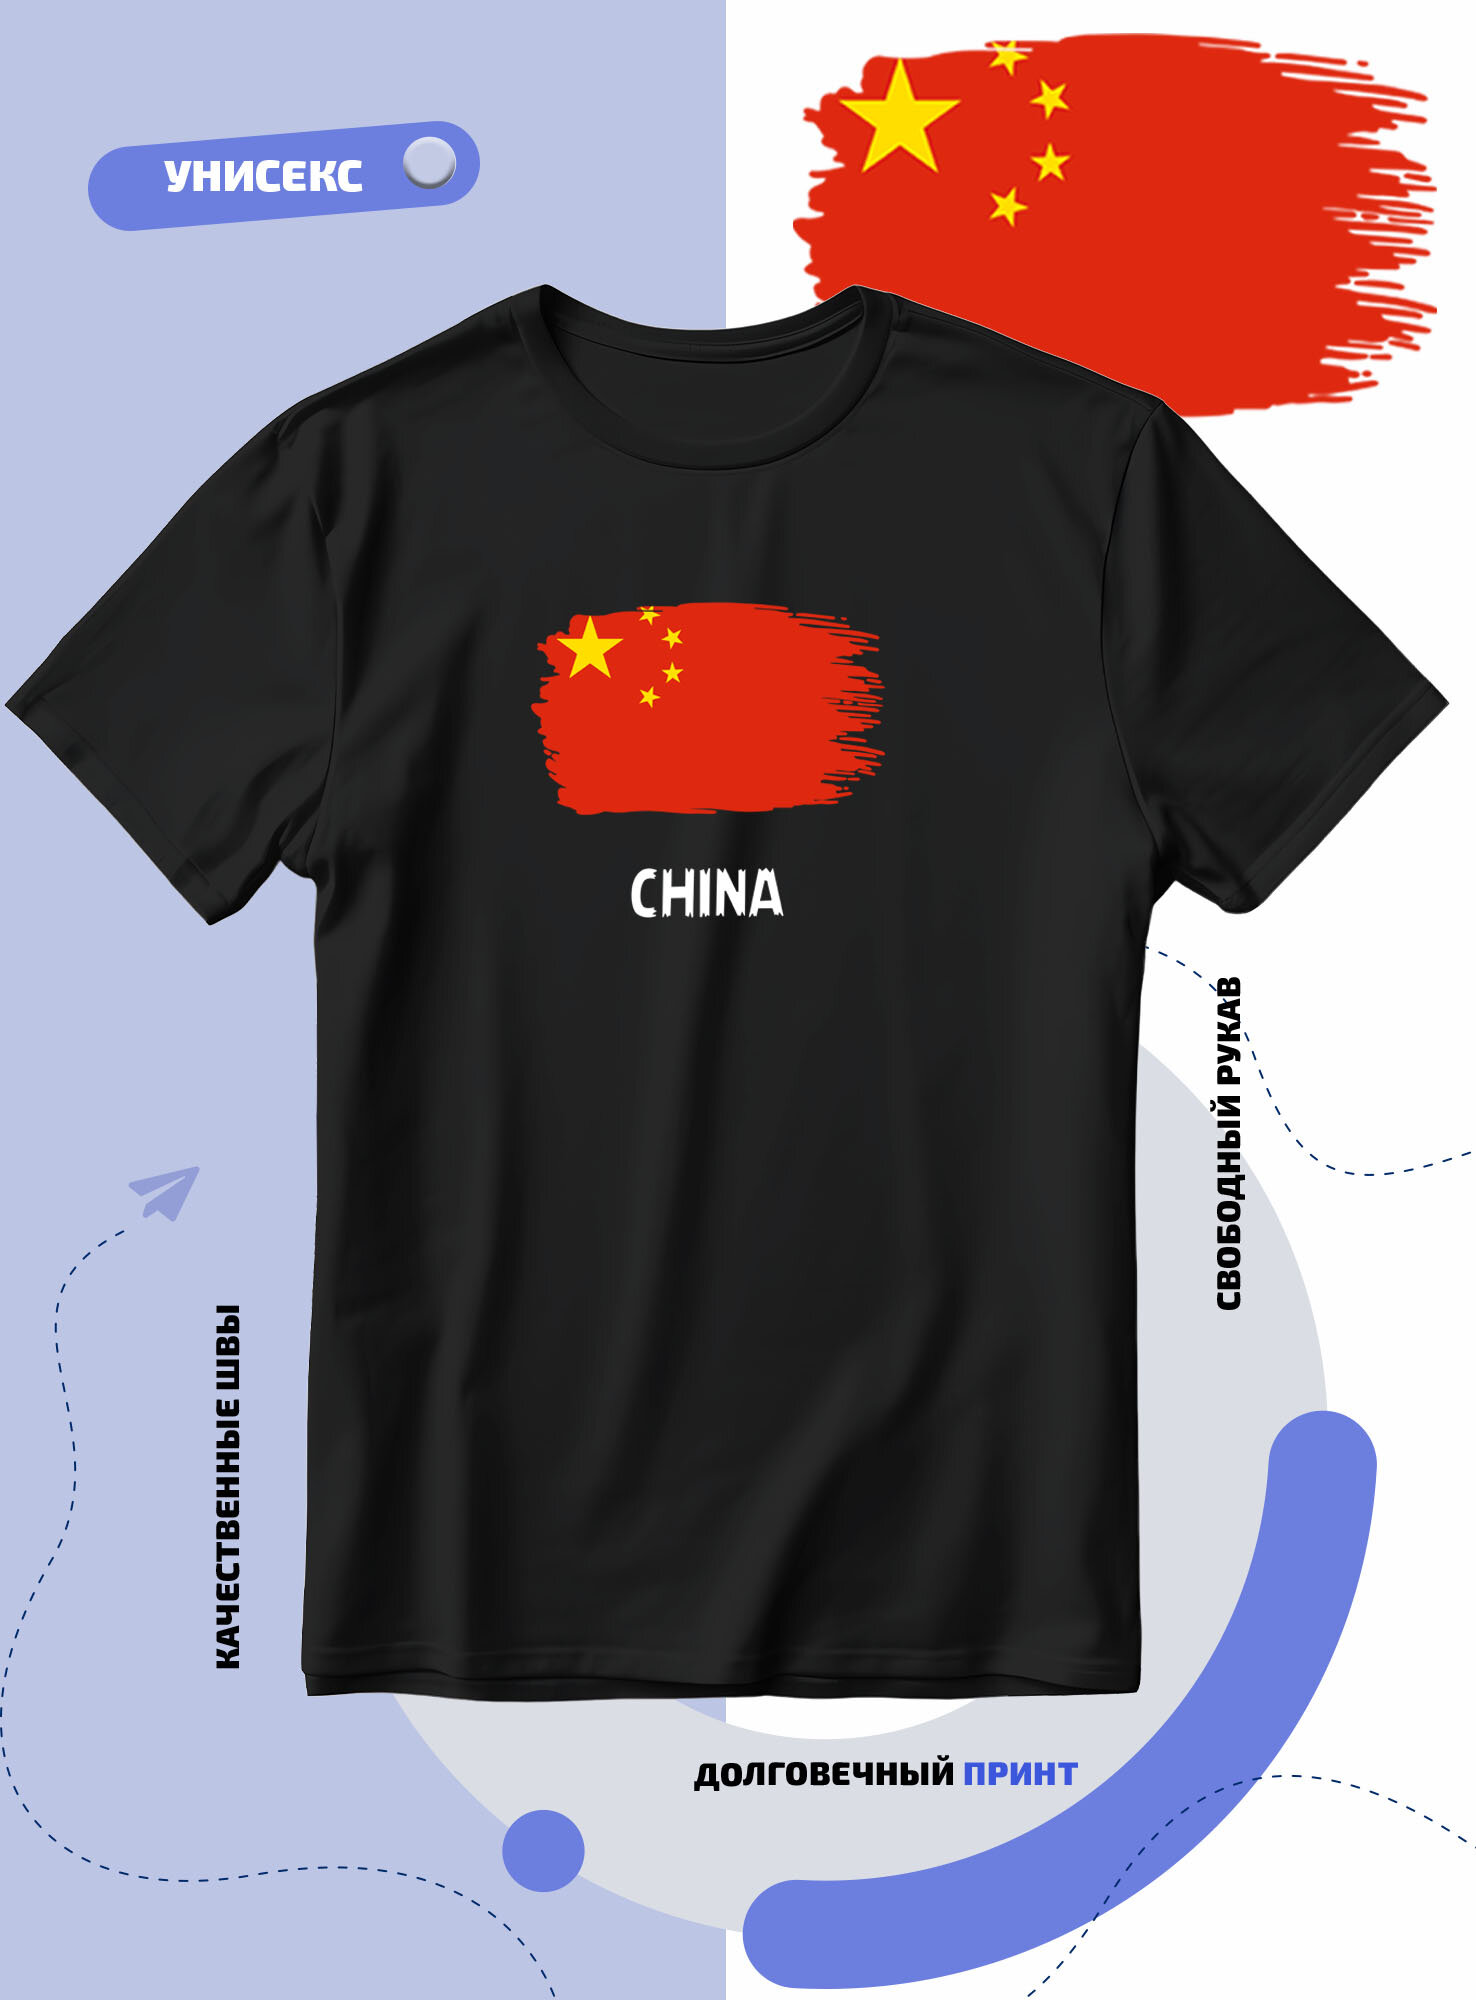 Футболка SMAIL-P с флагом Китая-China